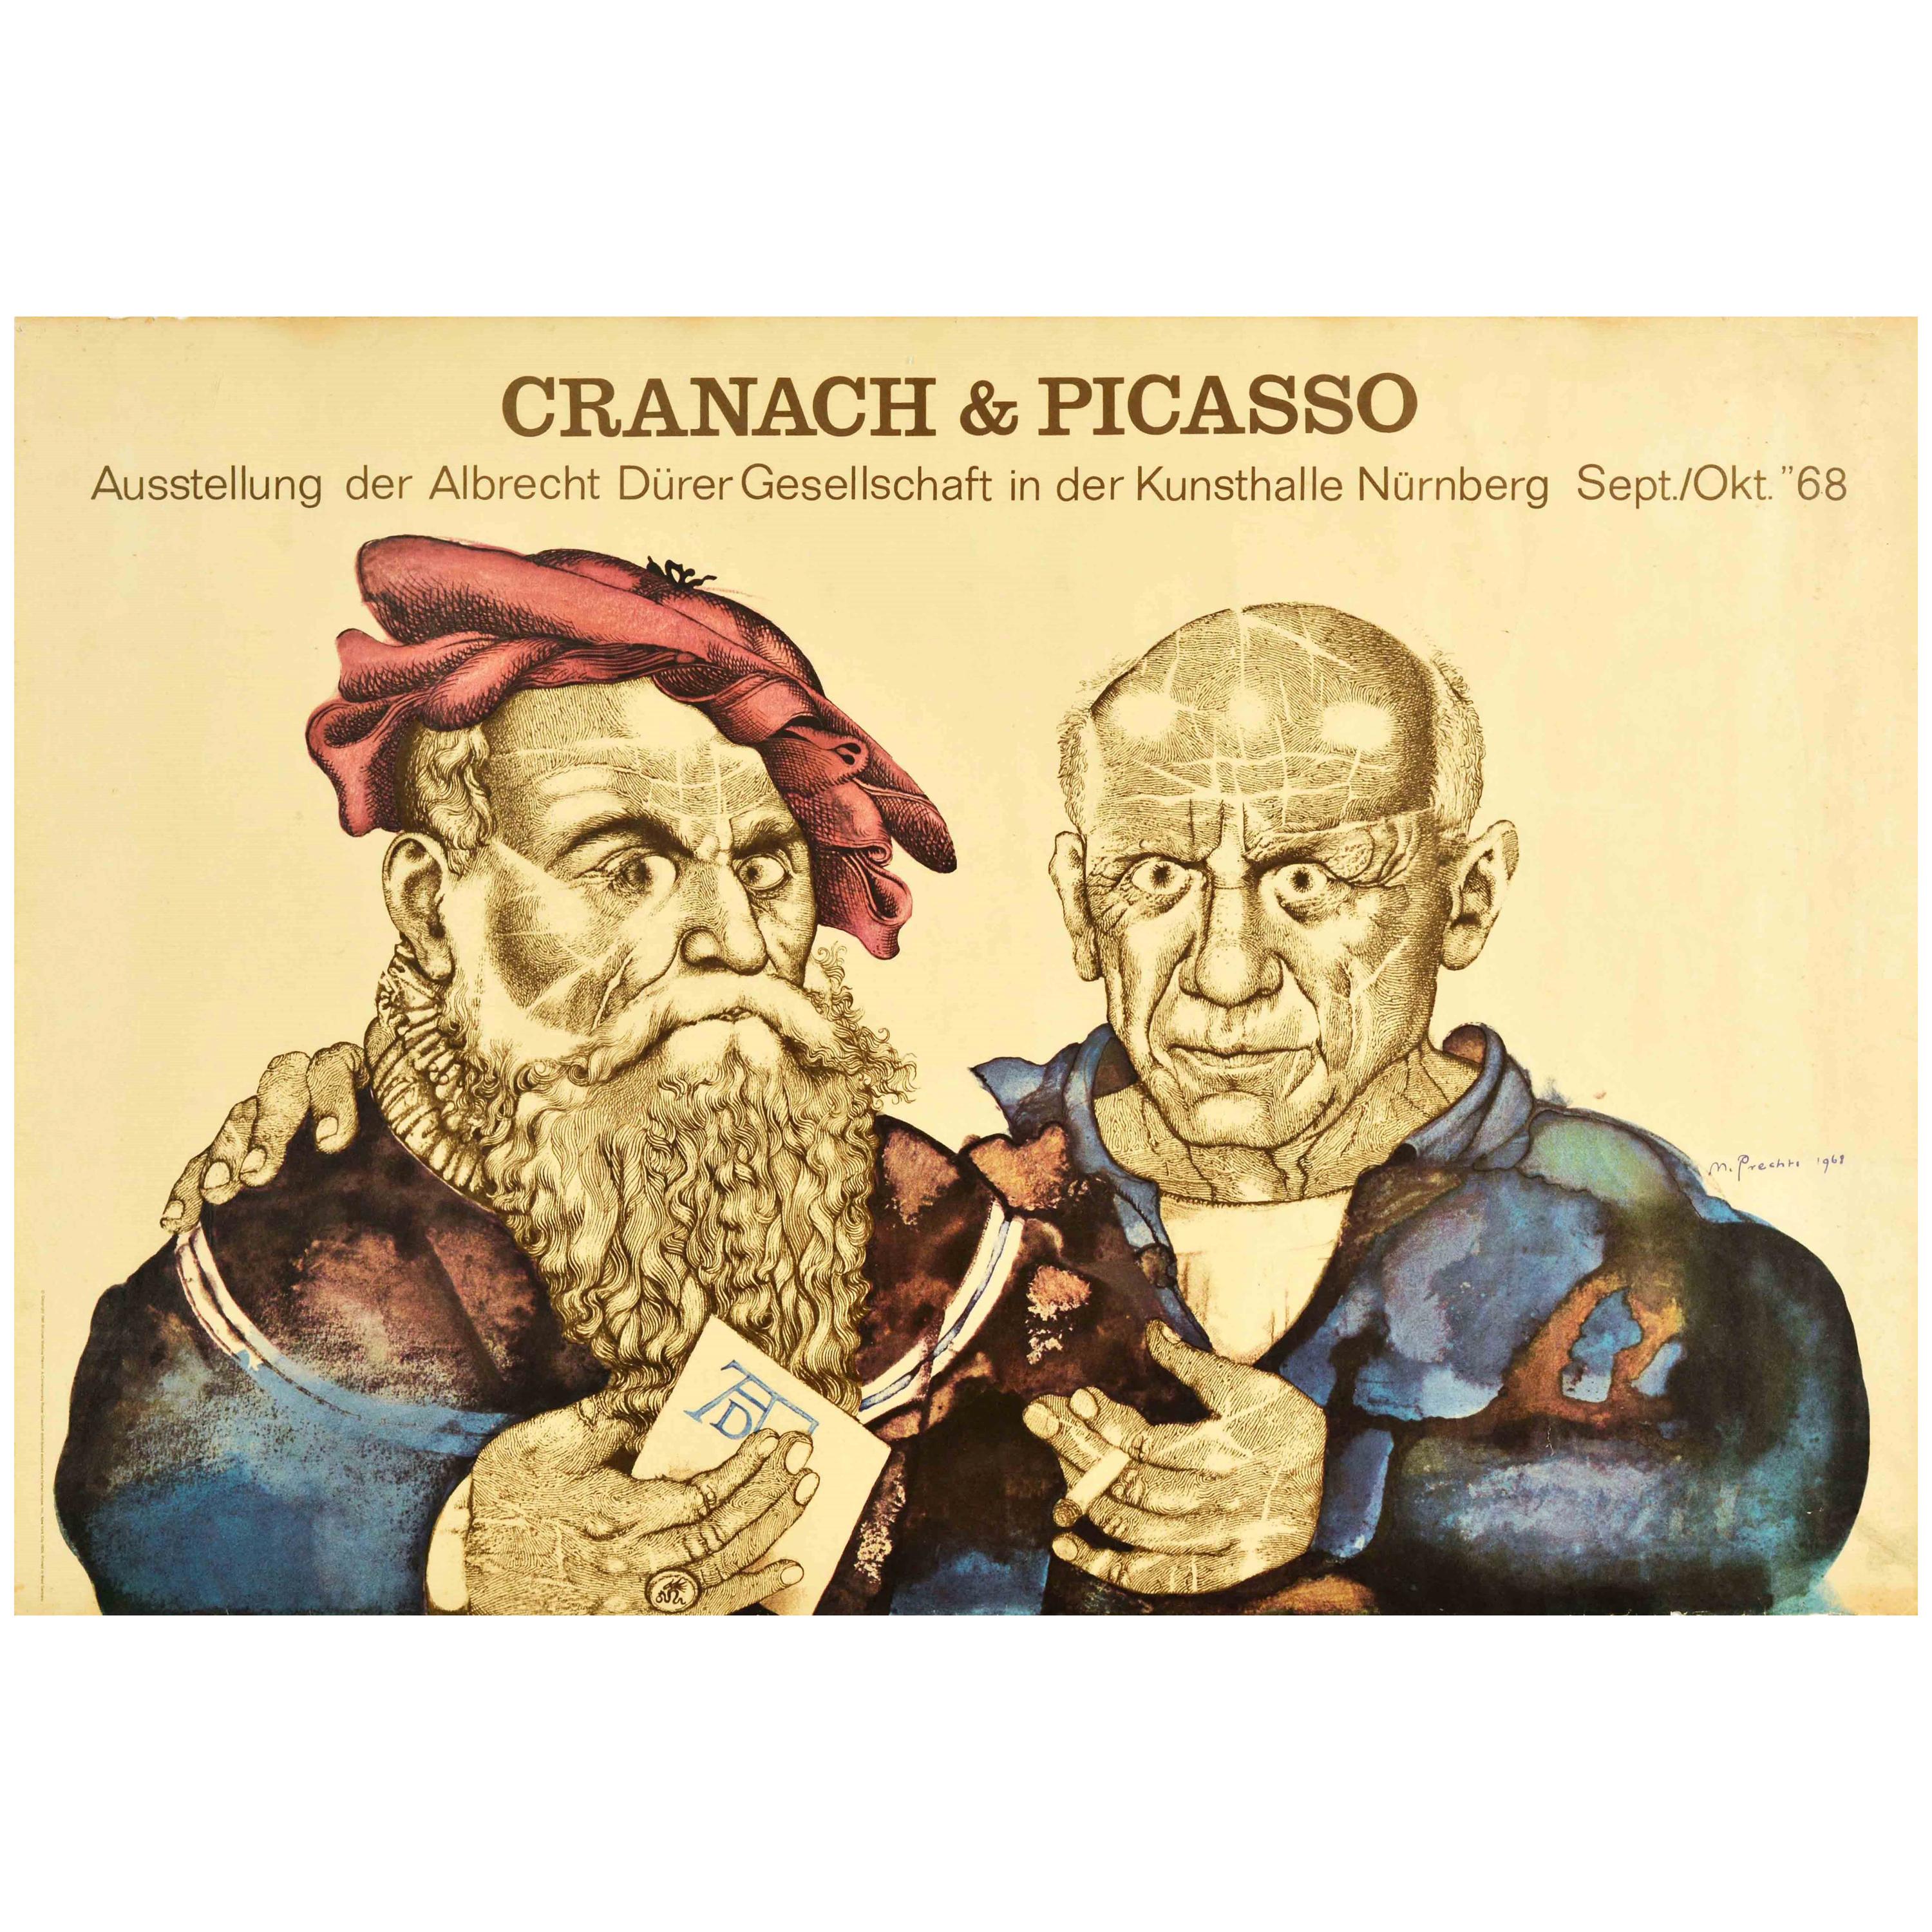 Original Vintage-Poster Cranach & Picasso-Kunstausstellung, Albrecht Durer Society